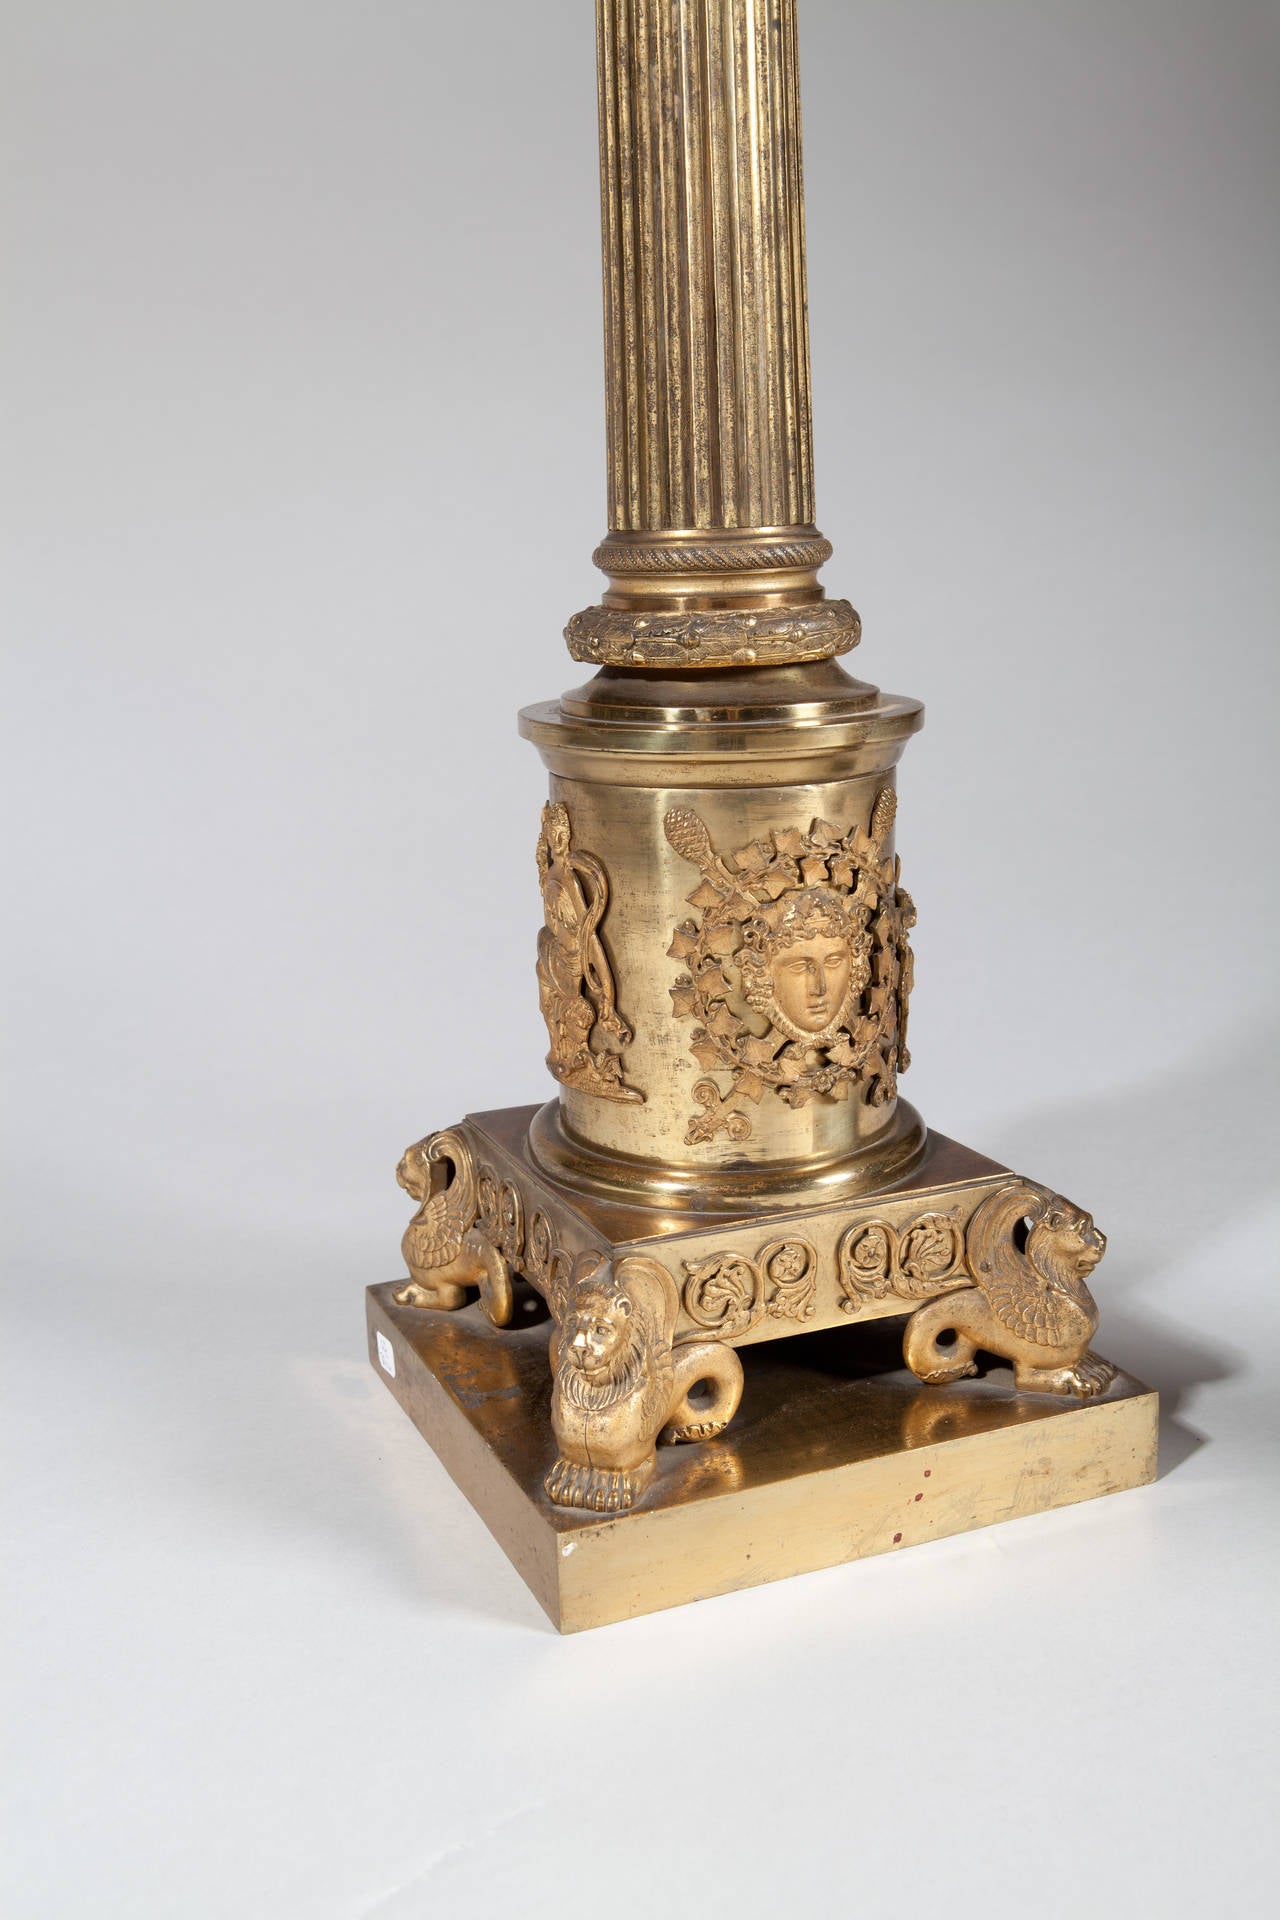 Une paire exceptionnelle de lampes à colonnes monumentales en bronze doré, chacune avec des colonnes cannelées, des chapiteaux corinthiens finement ciselés et des masques classiques appliqués et des montures à la base.